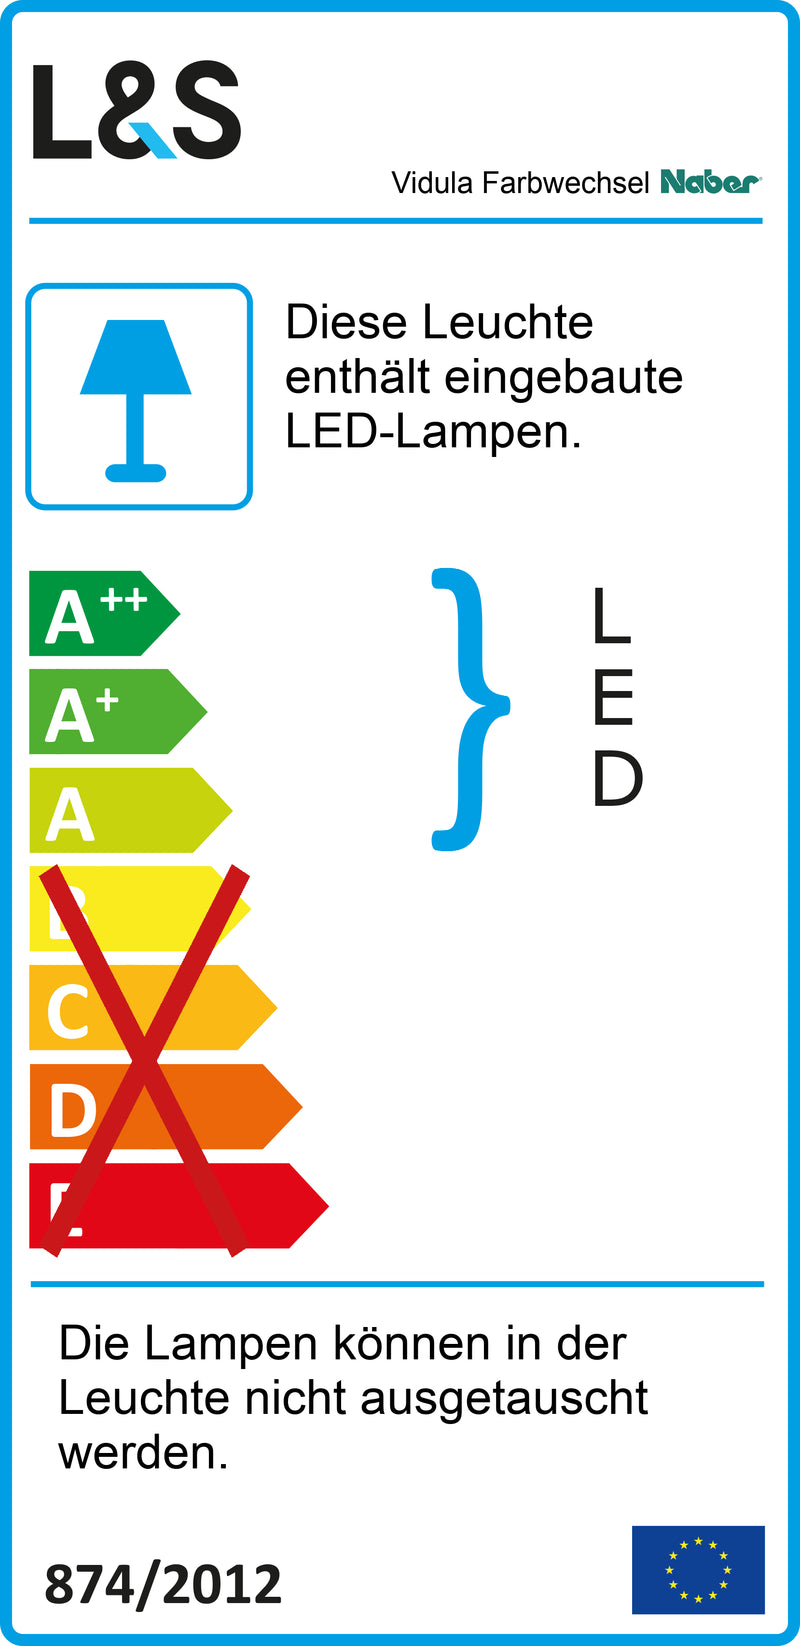 E-Label zu Zeichnung zu Vidula Farbwechsel LED als Variante L 600 mm, edelstahlfarbig von Naber GmbH in der Kategorie Lichttechnik in Österreich auf conceptshop.at